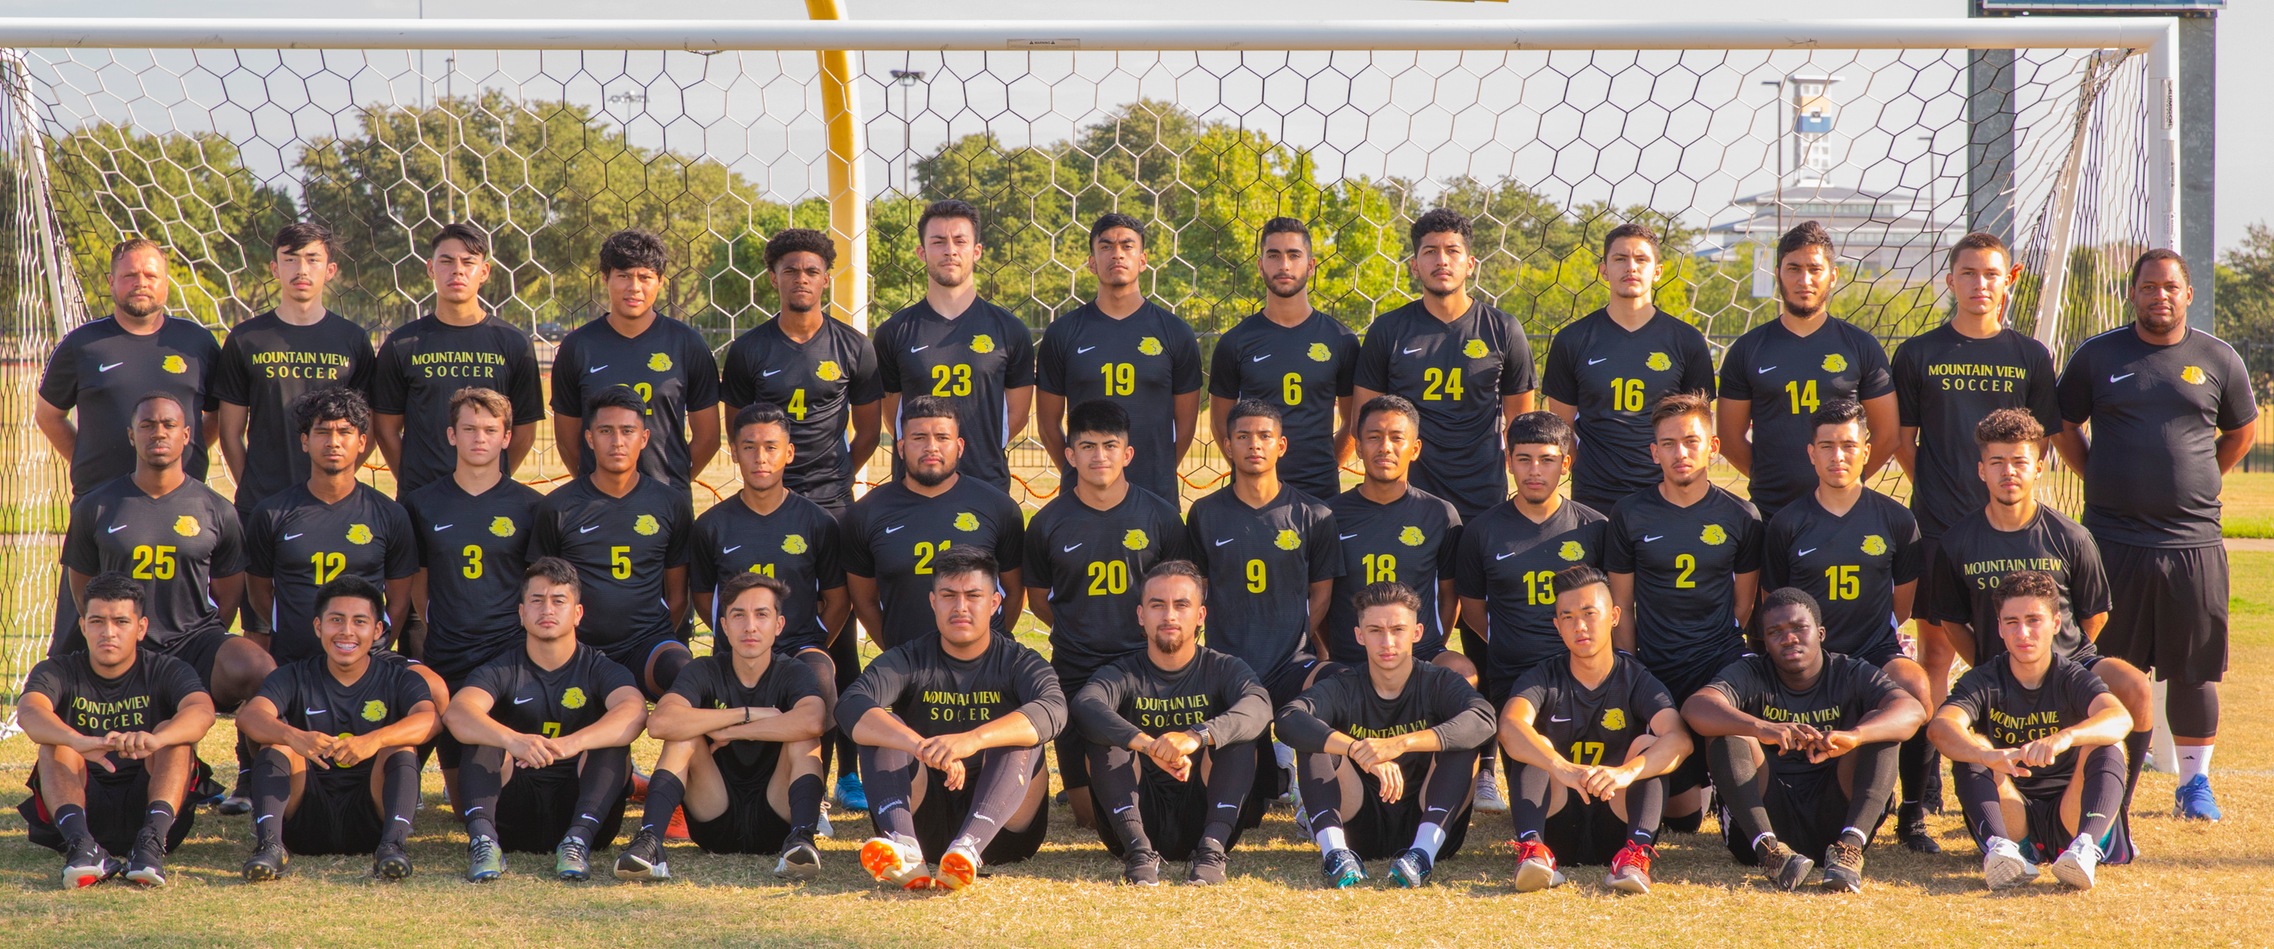 2019 MVC Men's Soccer Team